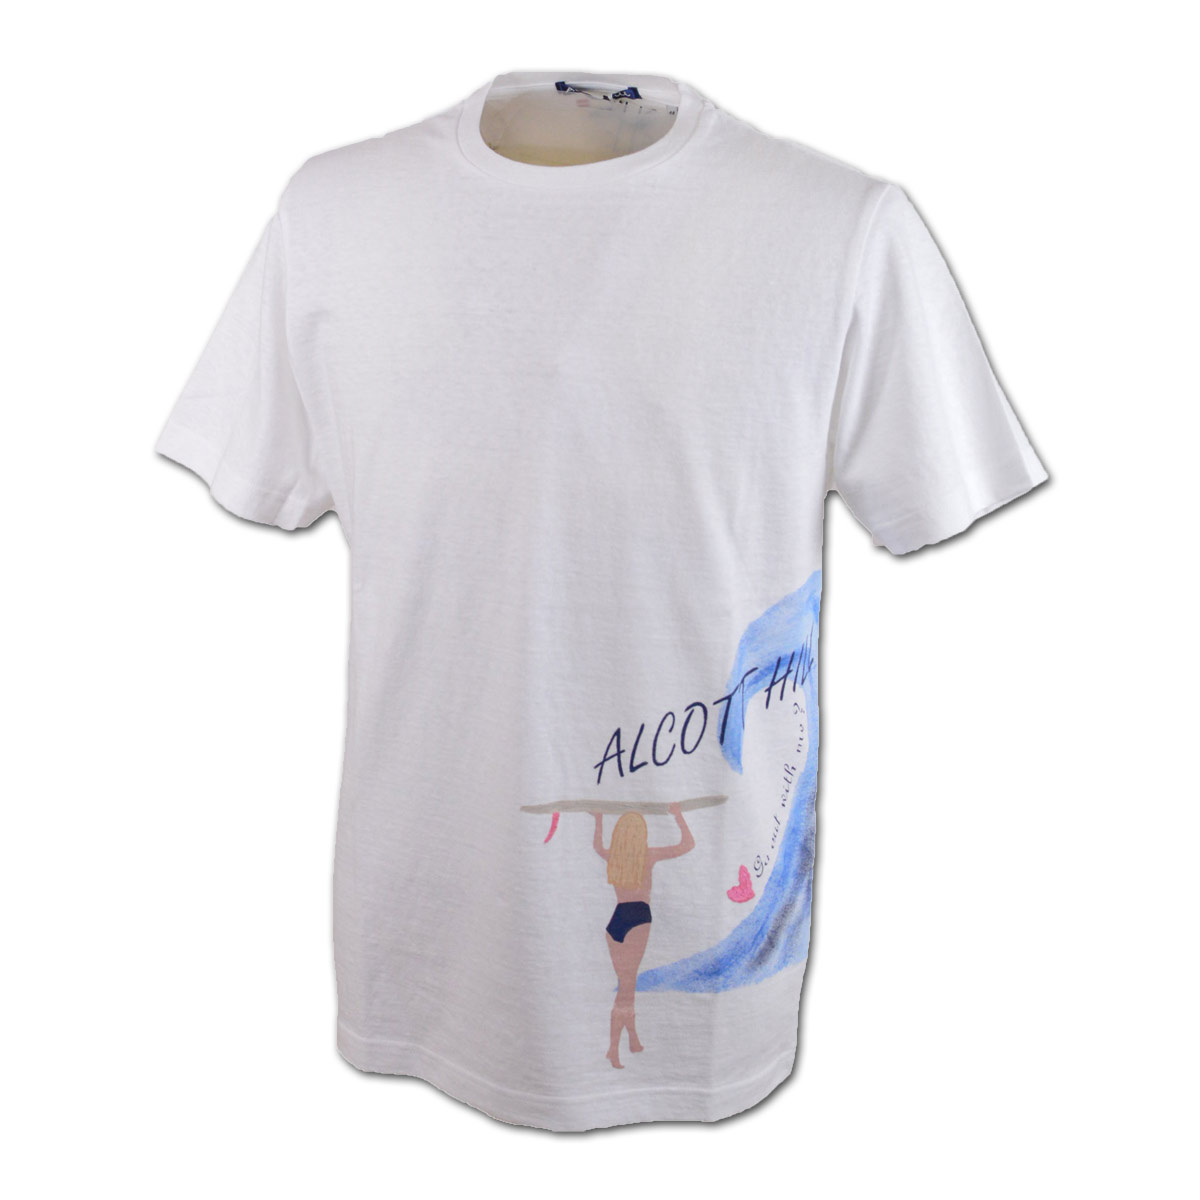 アルコットヒル 半袖Tシャツ メンズ 春夏用 白 紺 M L LL 31-2504-10